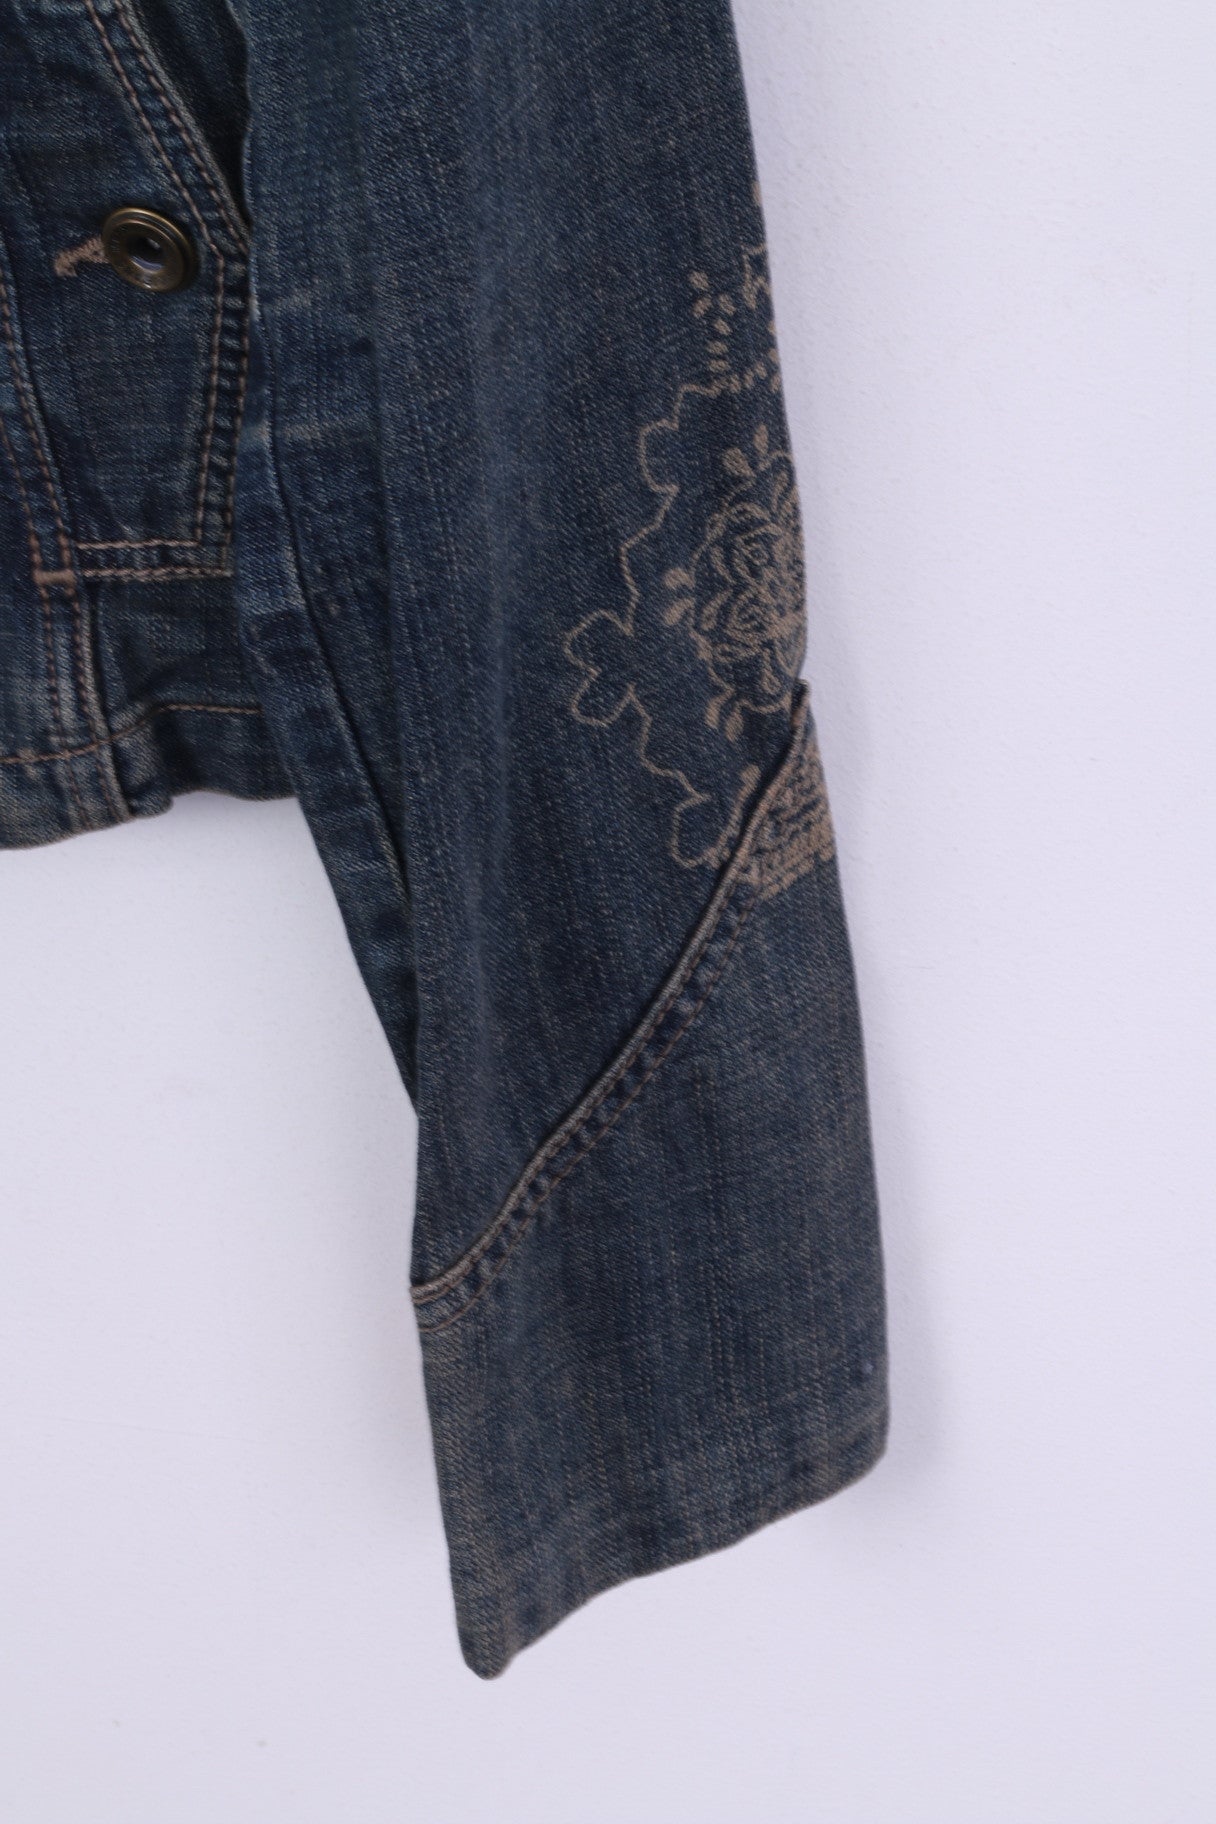 MEXX Womens S 10 Denim Jacket Blue Vintage Cotton Jeans